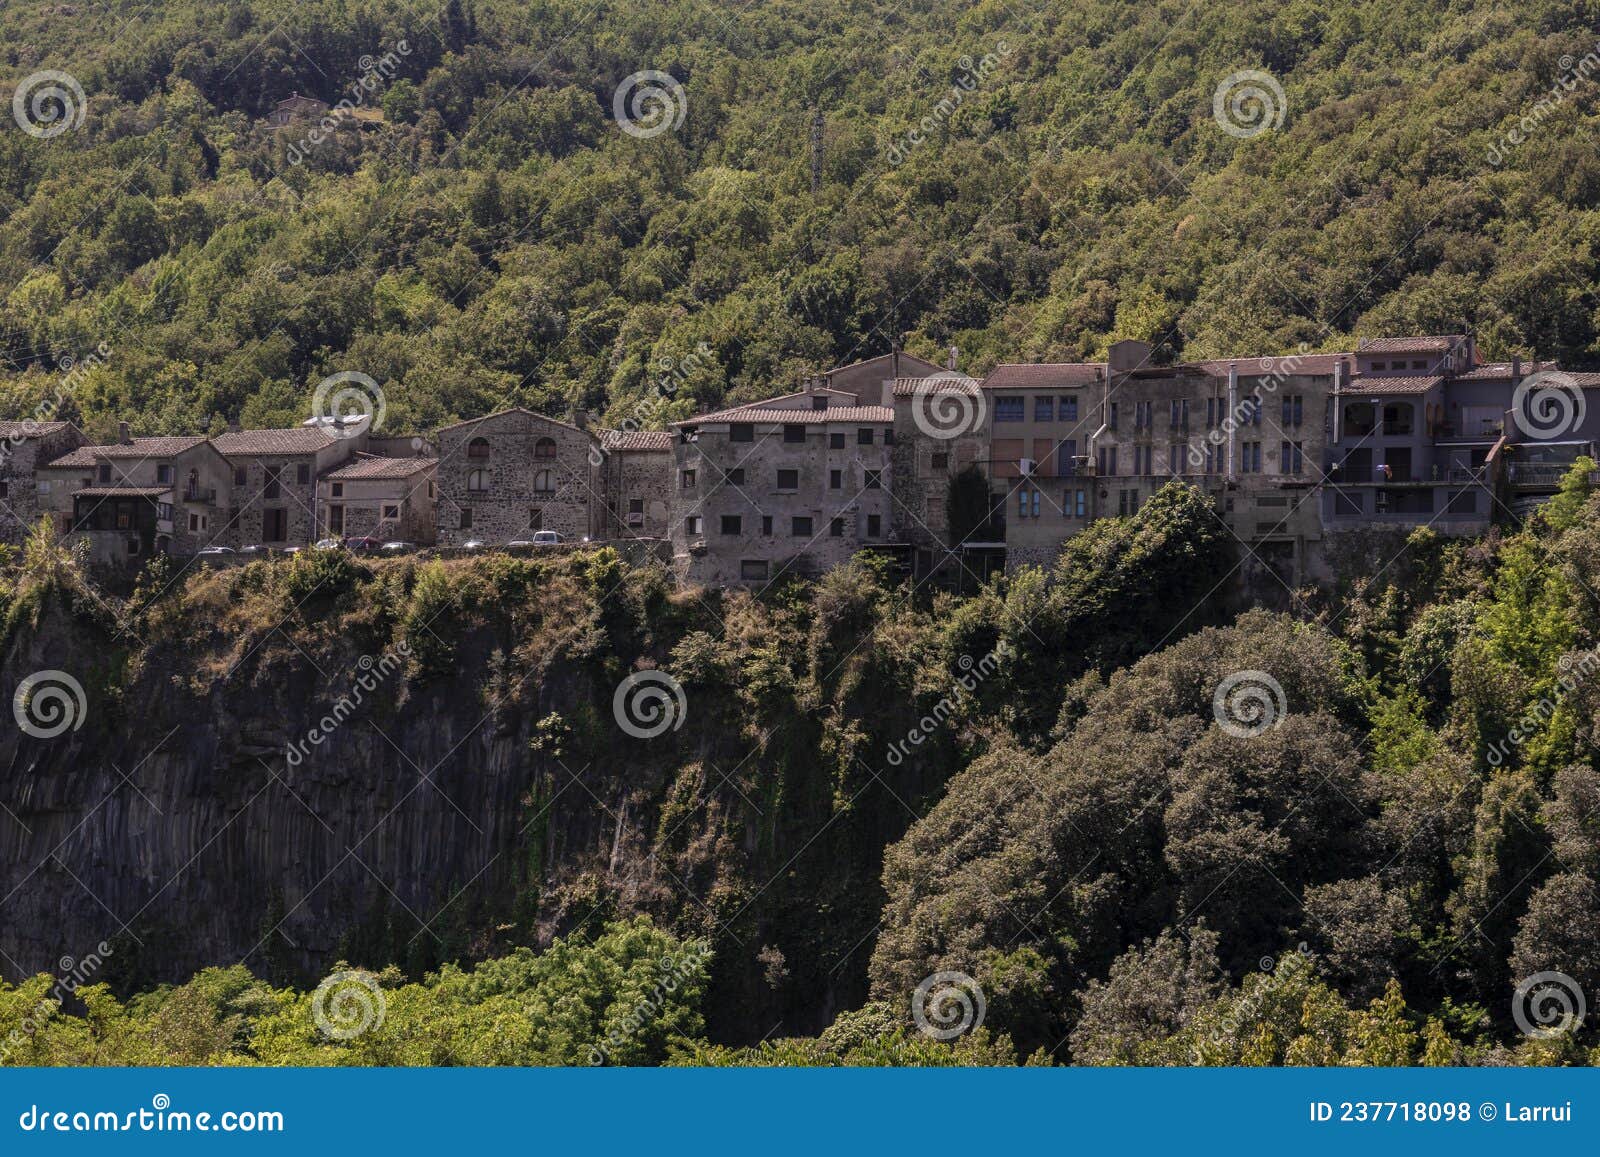 Castellfollit De La Roca Images – Browse 214 Stock Photos